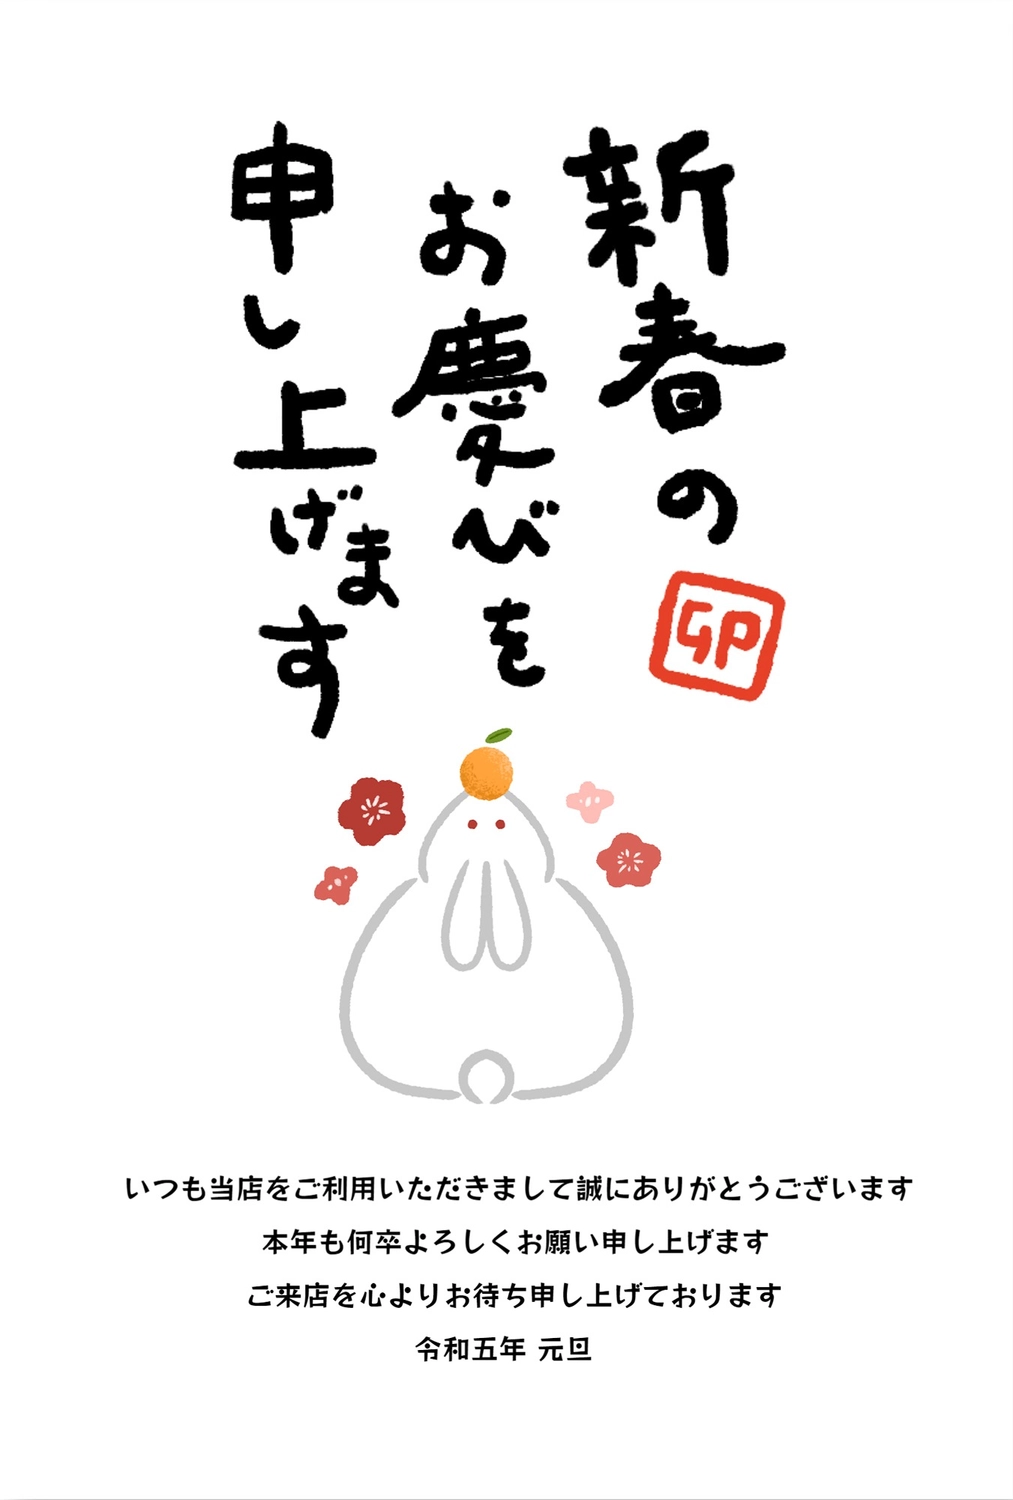 年賀状　鏡餅になったうさぎ, New Year's card, poorly written character, Happy New Year!, New Year Card template